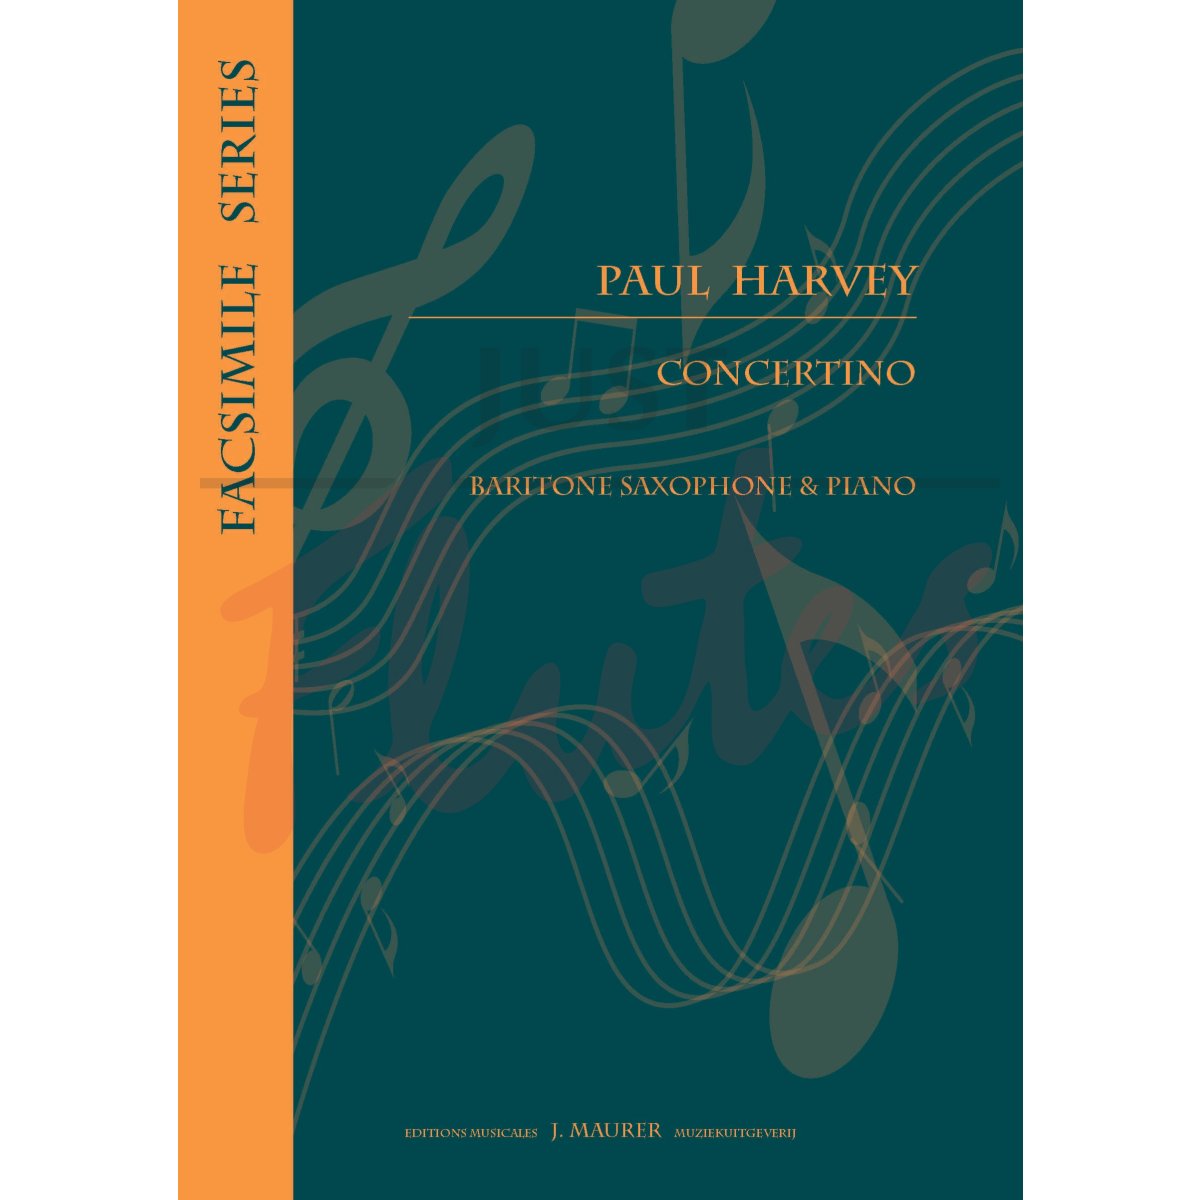 Concertino for Baritone Saxophone and Piano